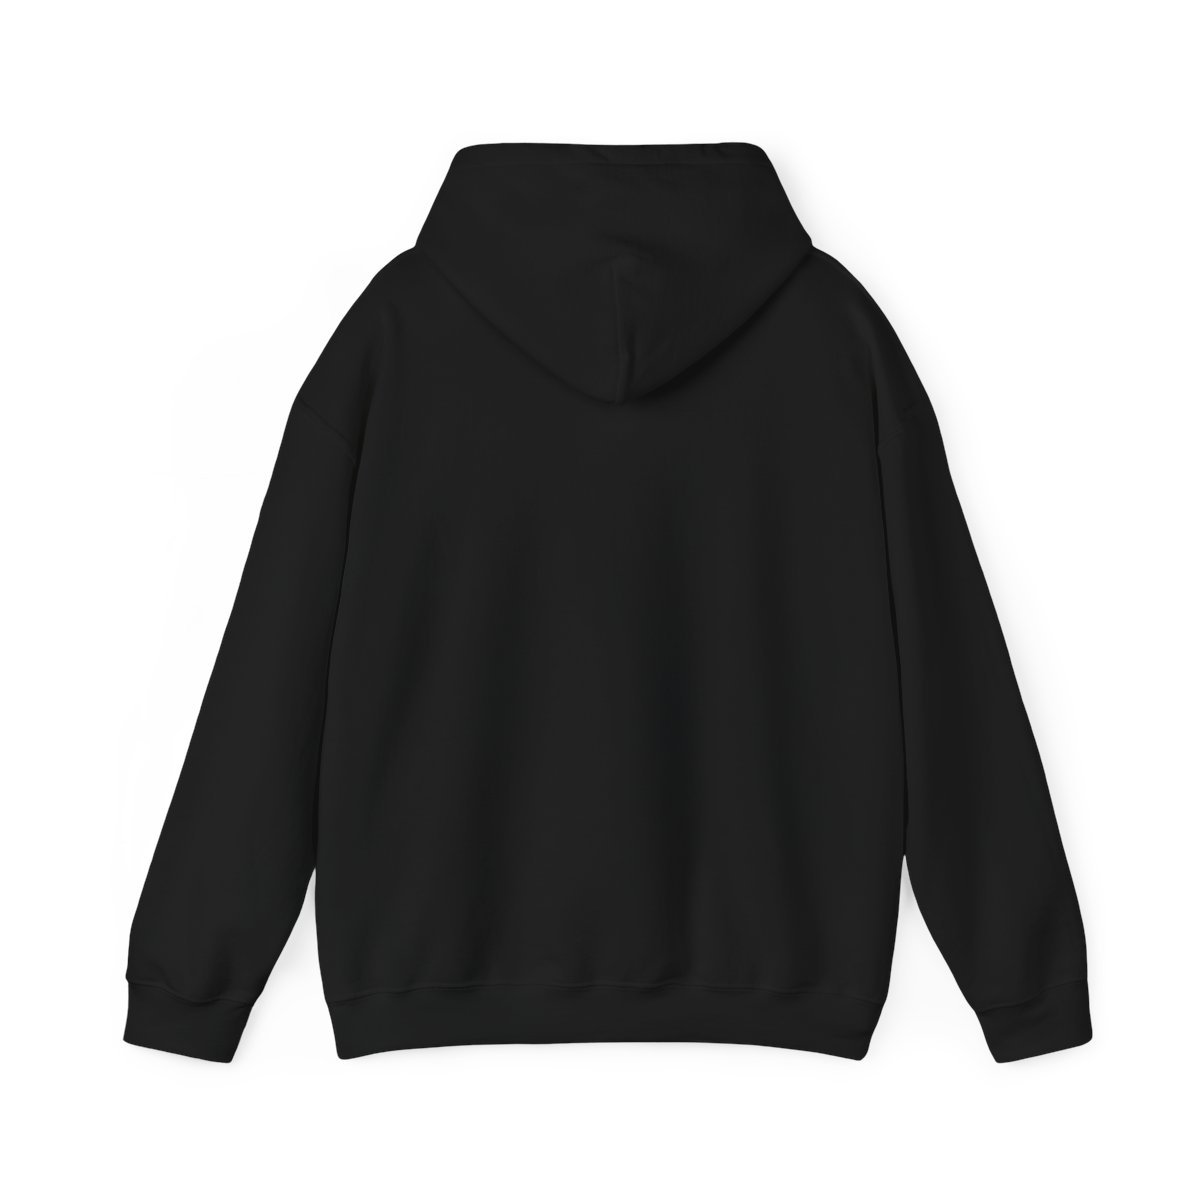 Supresion – La Guerra Comenzo Pullover Hooded Sweatshirt